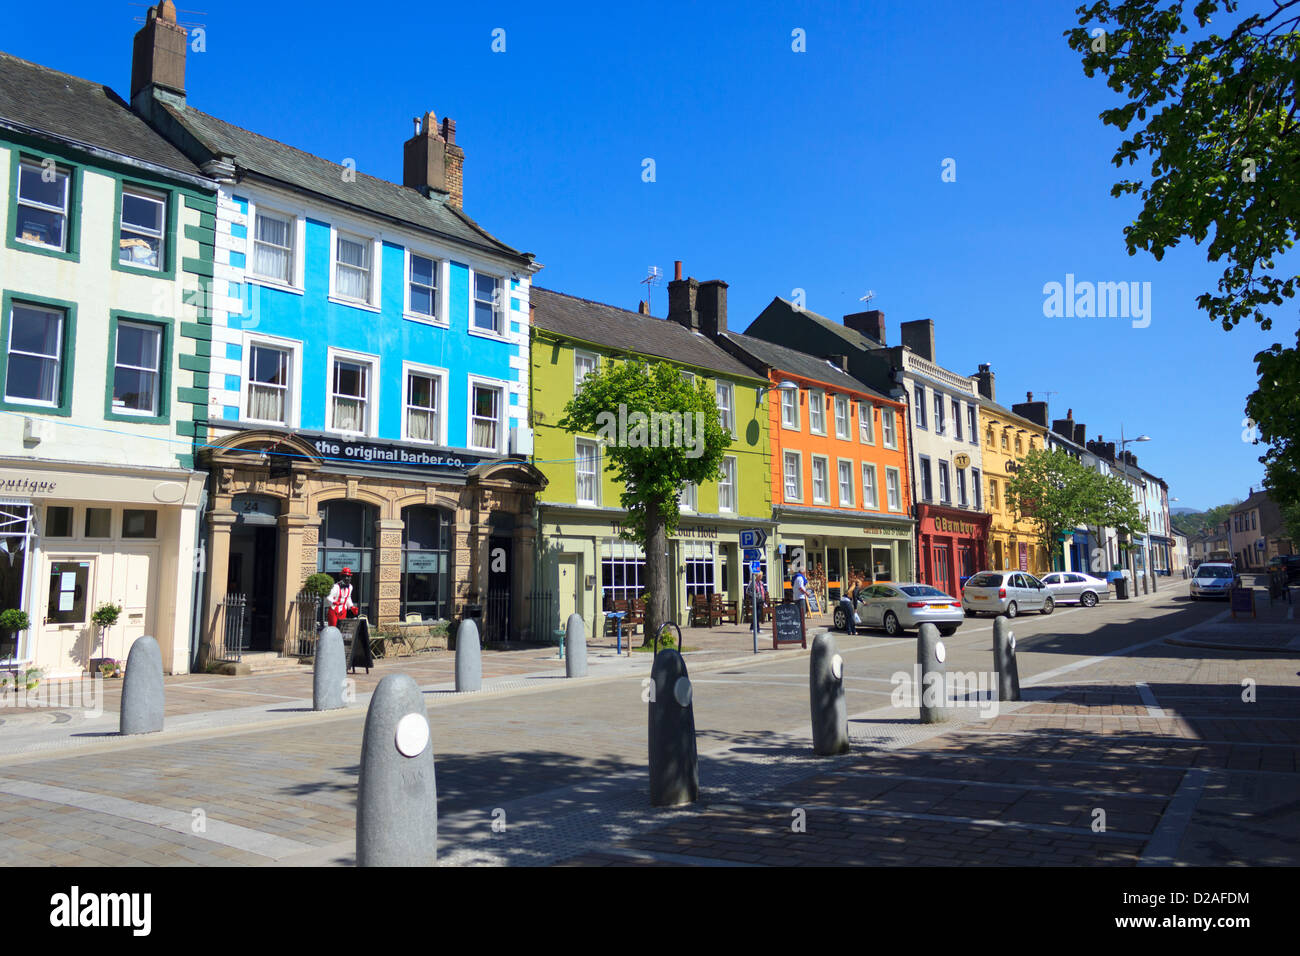 Maisons colorées et historique sur la rue principale de Cockermouth, Cumbria, Royaume-Uni. Banque D'Images